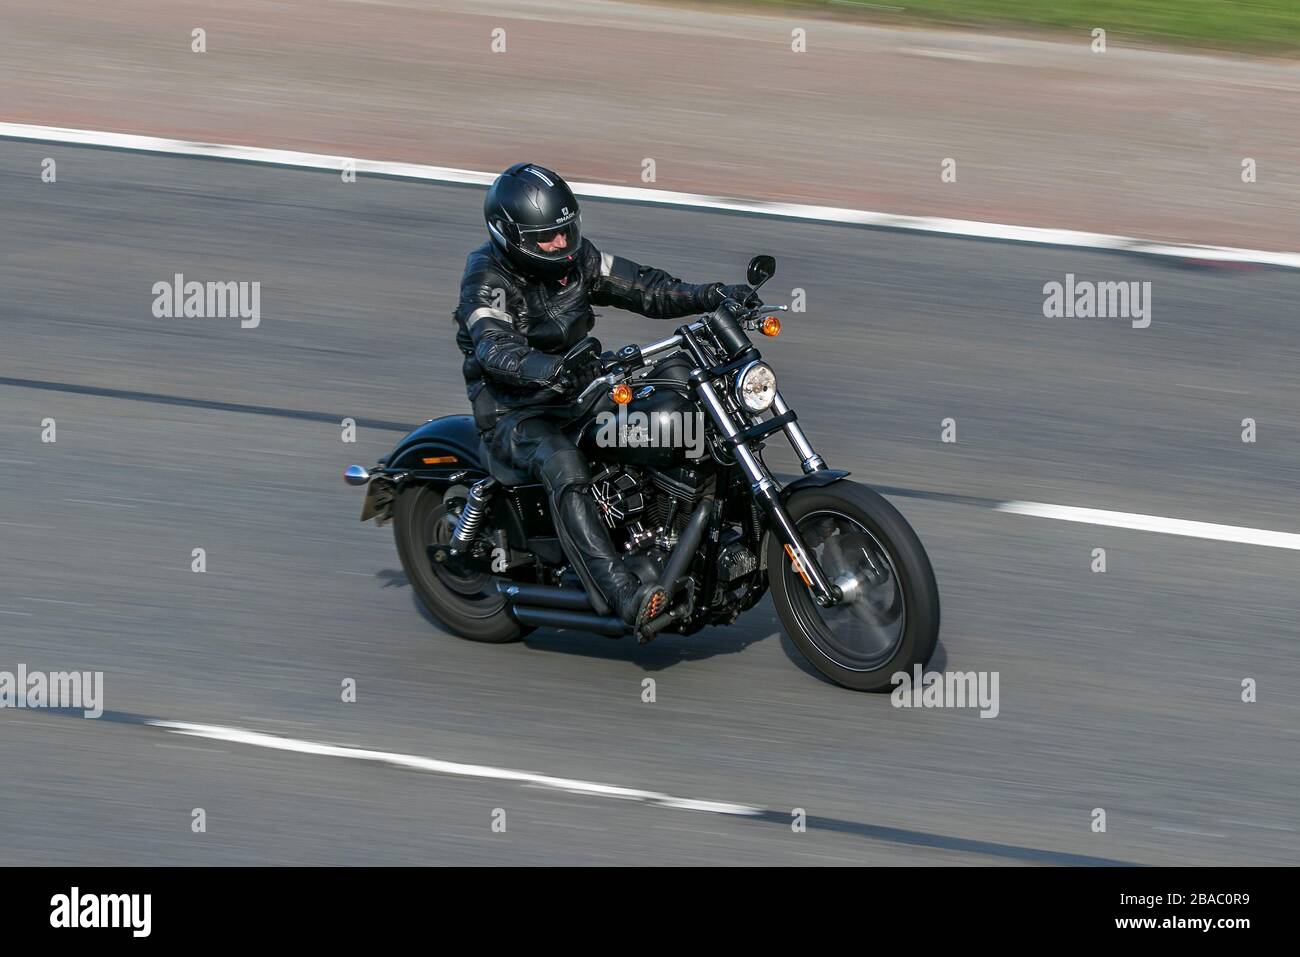 Harley Davidson Motorrad-Fahrer; zwei Radtransport, Motorräder, Fahrzeug, Motorräder, Radfahrer auf der Autobahn M6 Chorley, Großbritannien Stockfoto